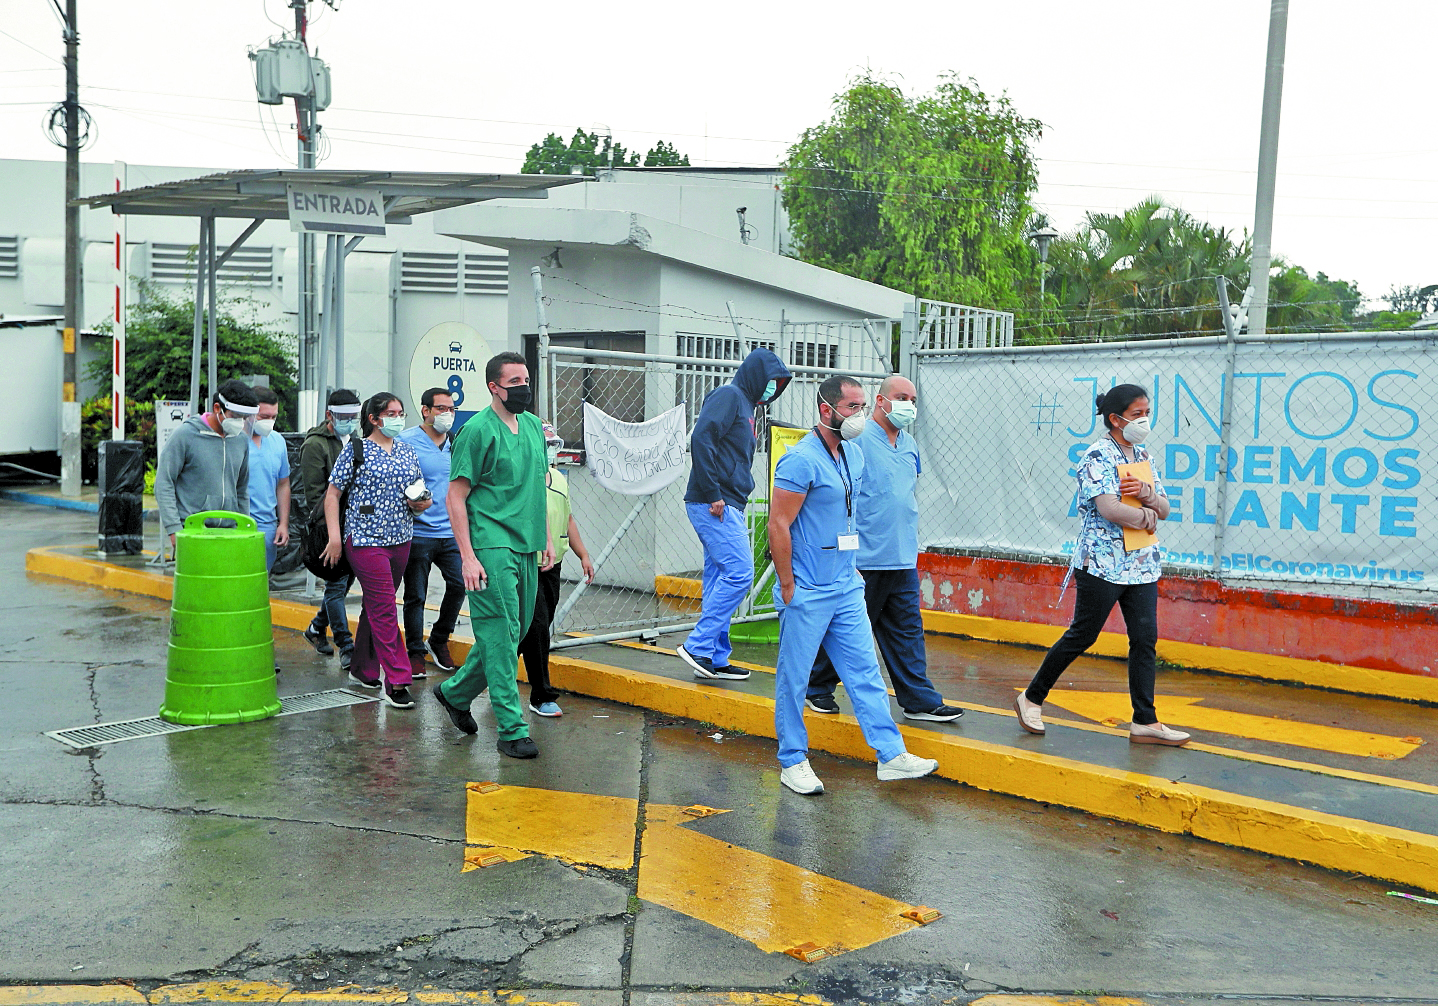 El personal sanitario para atender a los guatemaltecos es insuficiente, y la crisis generada por la pandemia del covid-19 hizo más evidente el problema. (Foto Prensa Libre: Hemeroteca PL)
